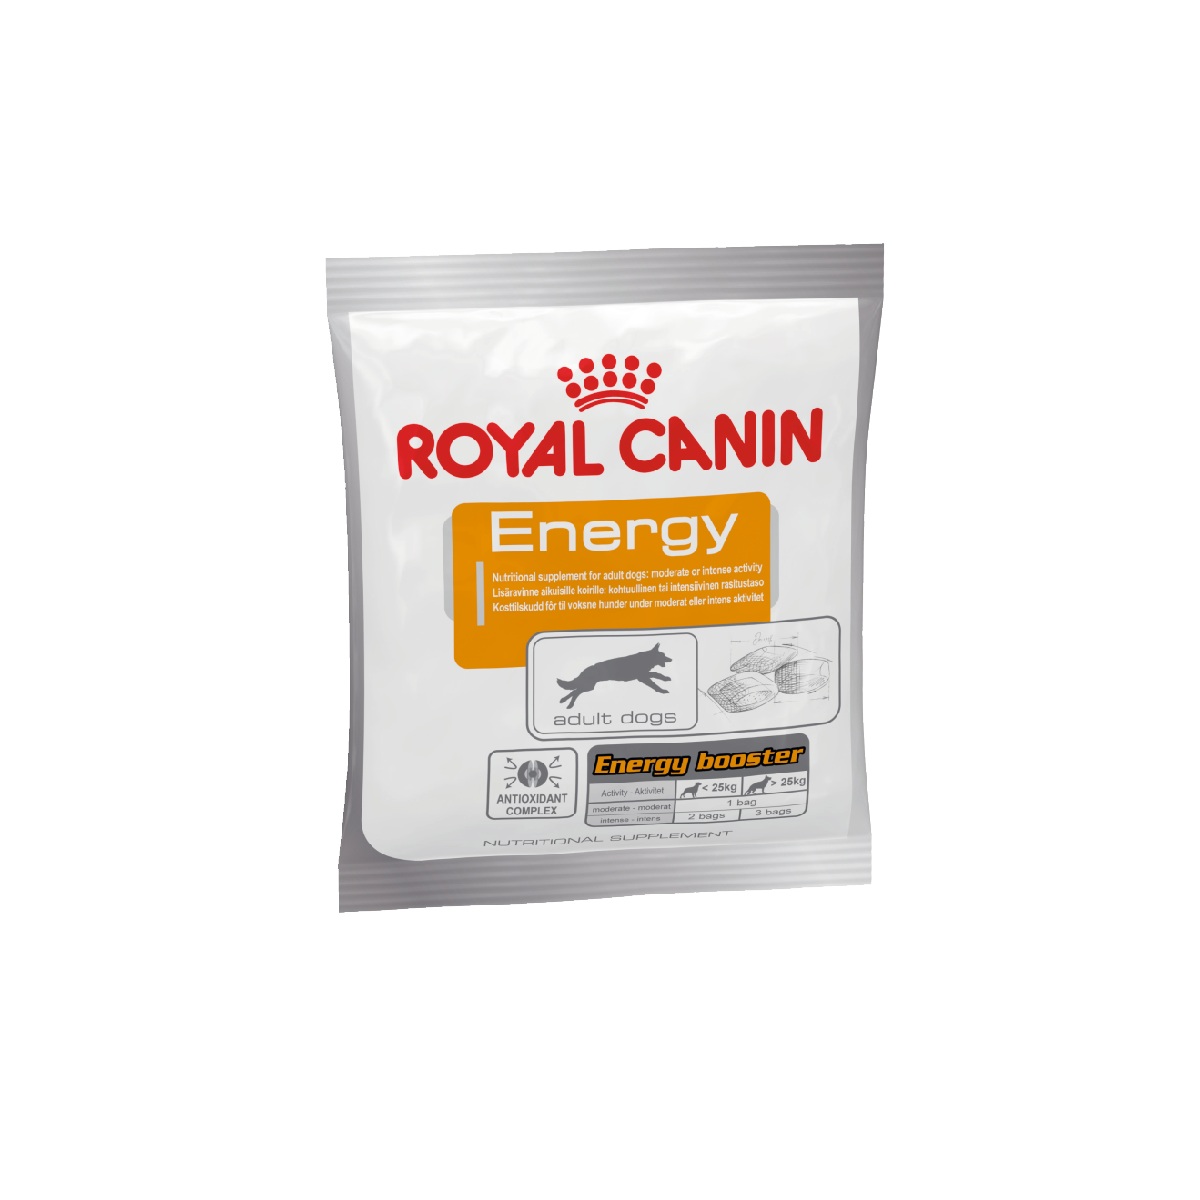 Royal Canin Energy prehransko dopolnilo...